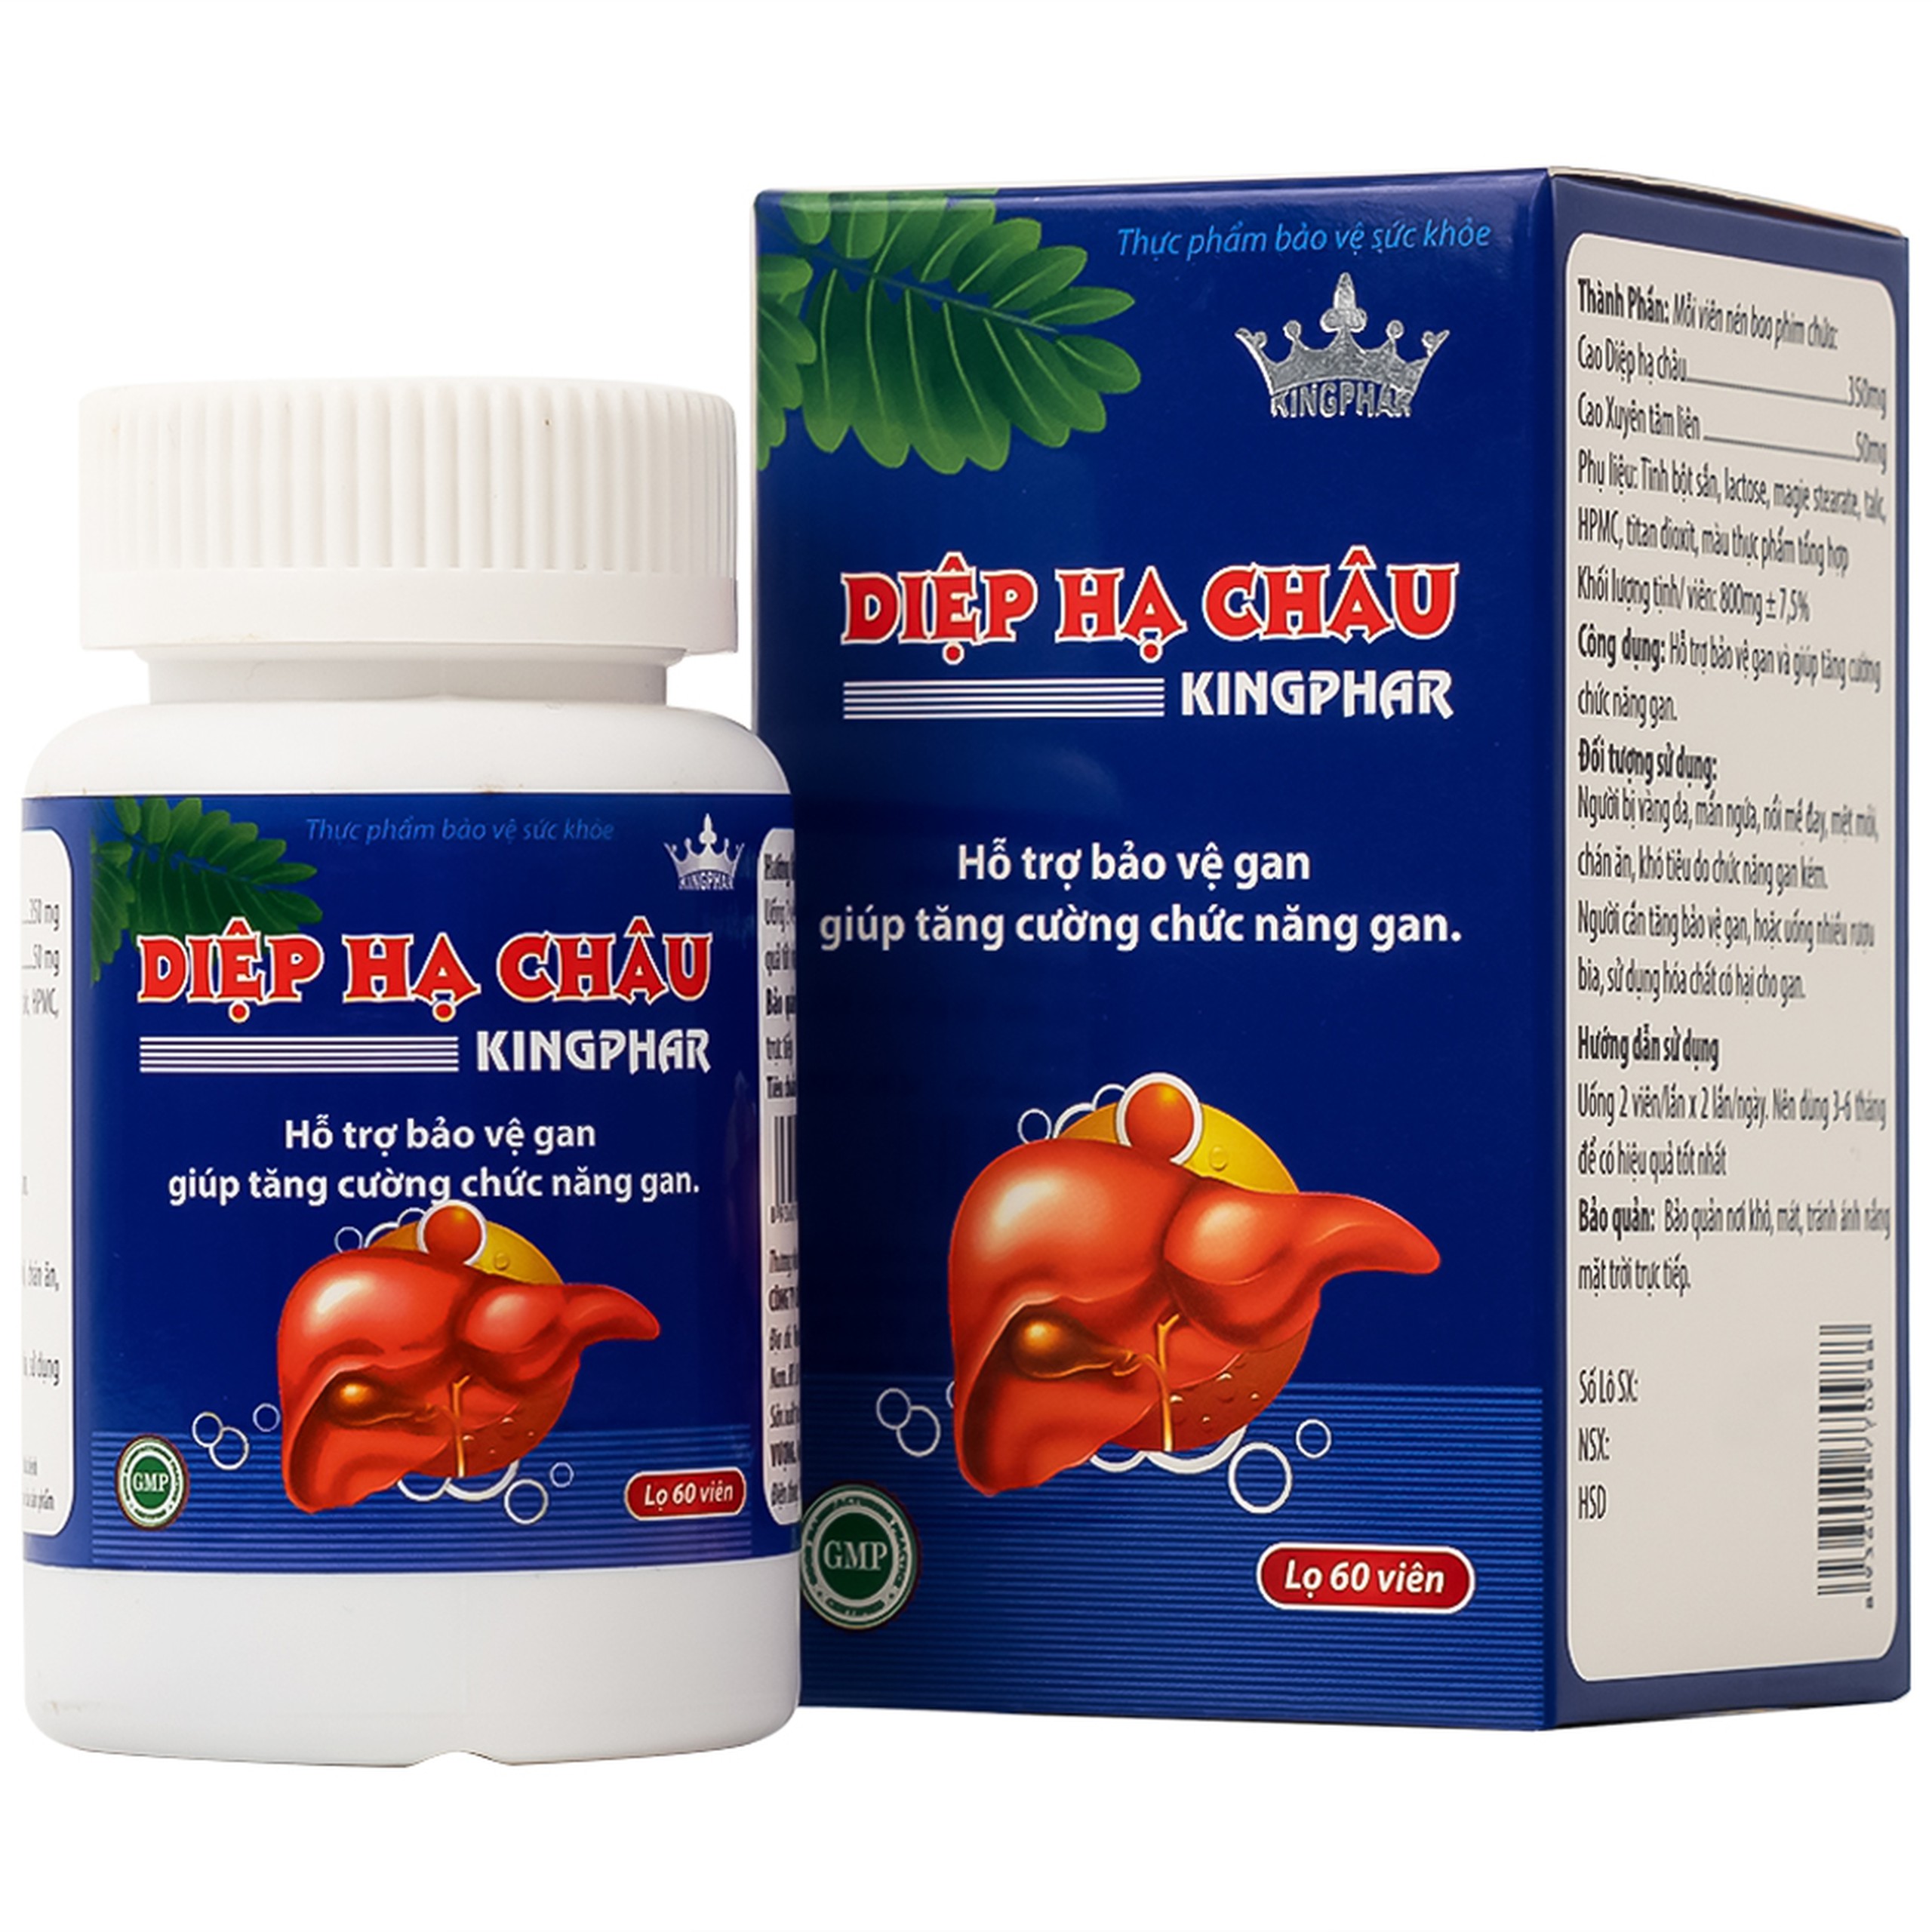 Viên uống Diệp Hạ Châu Kingphar hỗ trợ bảo vệ gan, tăng cường chức năng gan (60 viên)